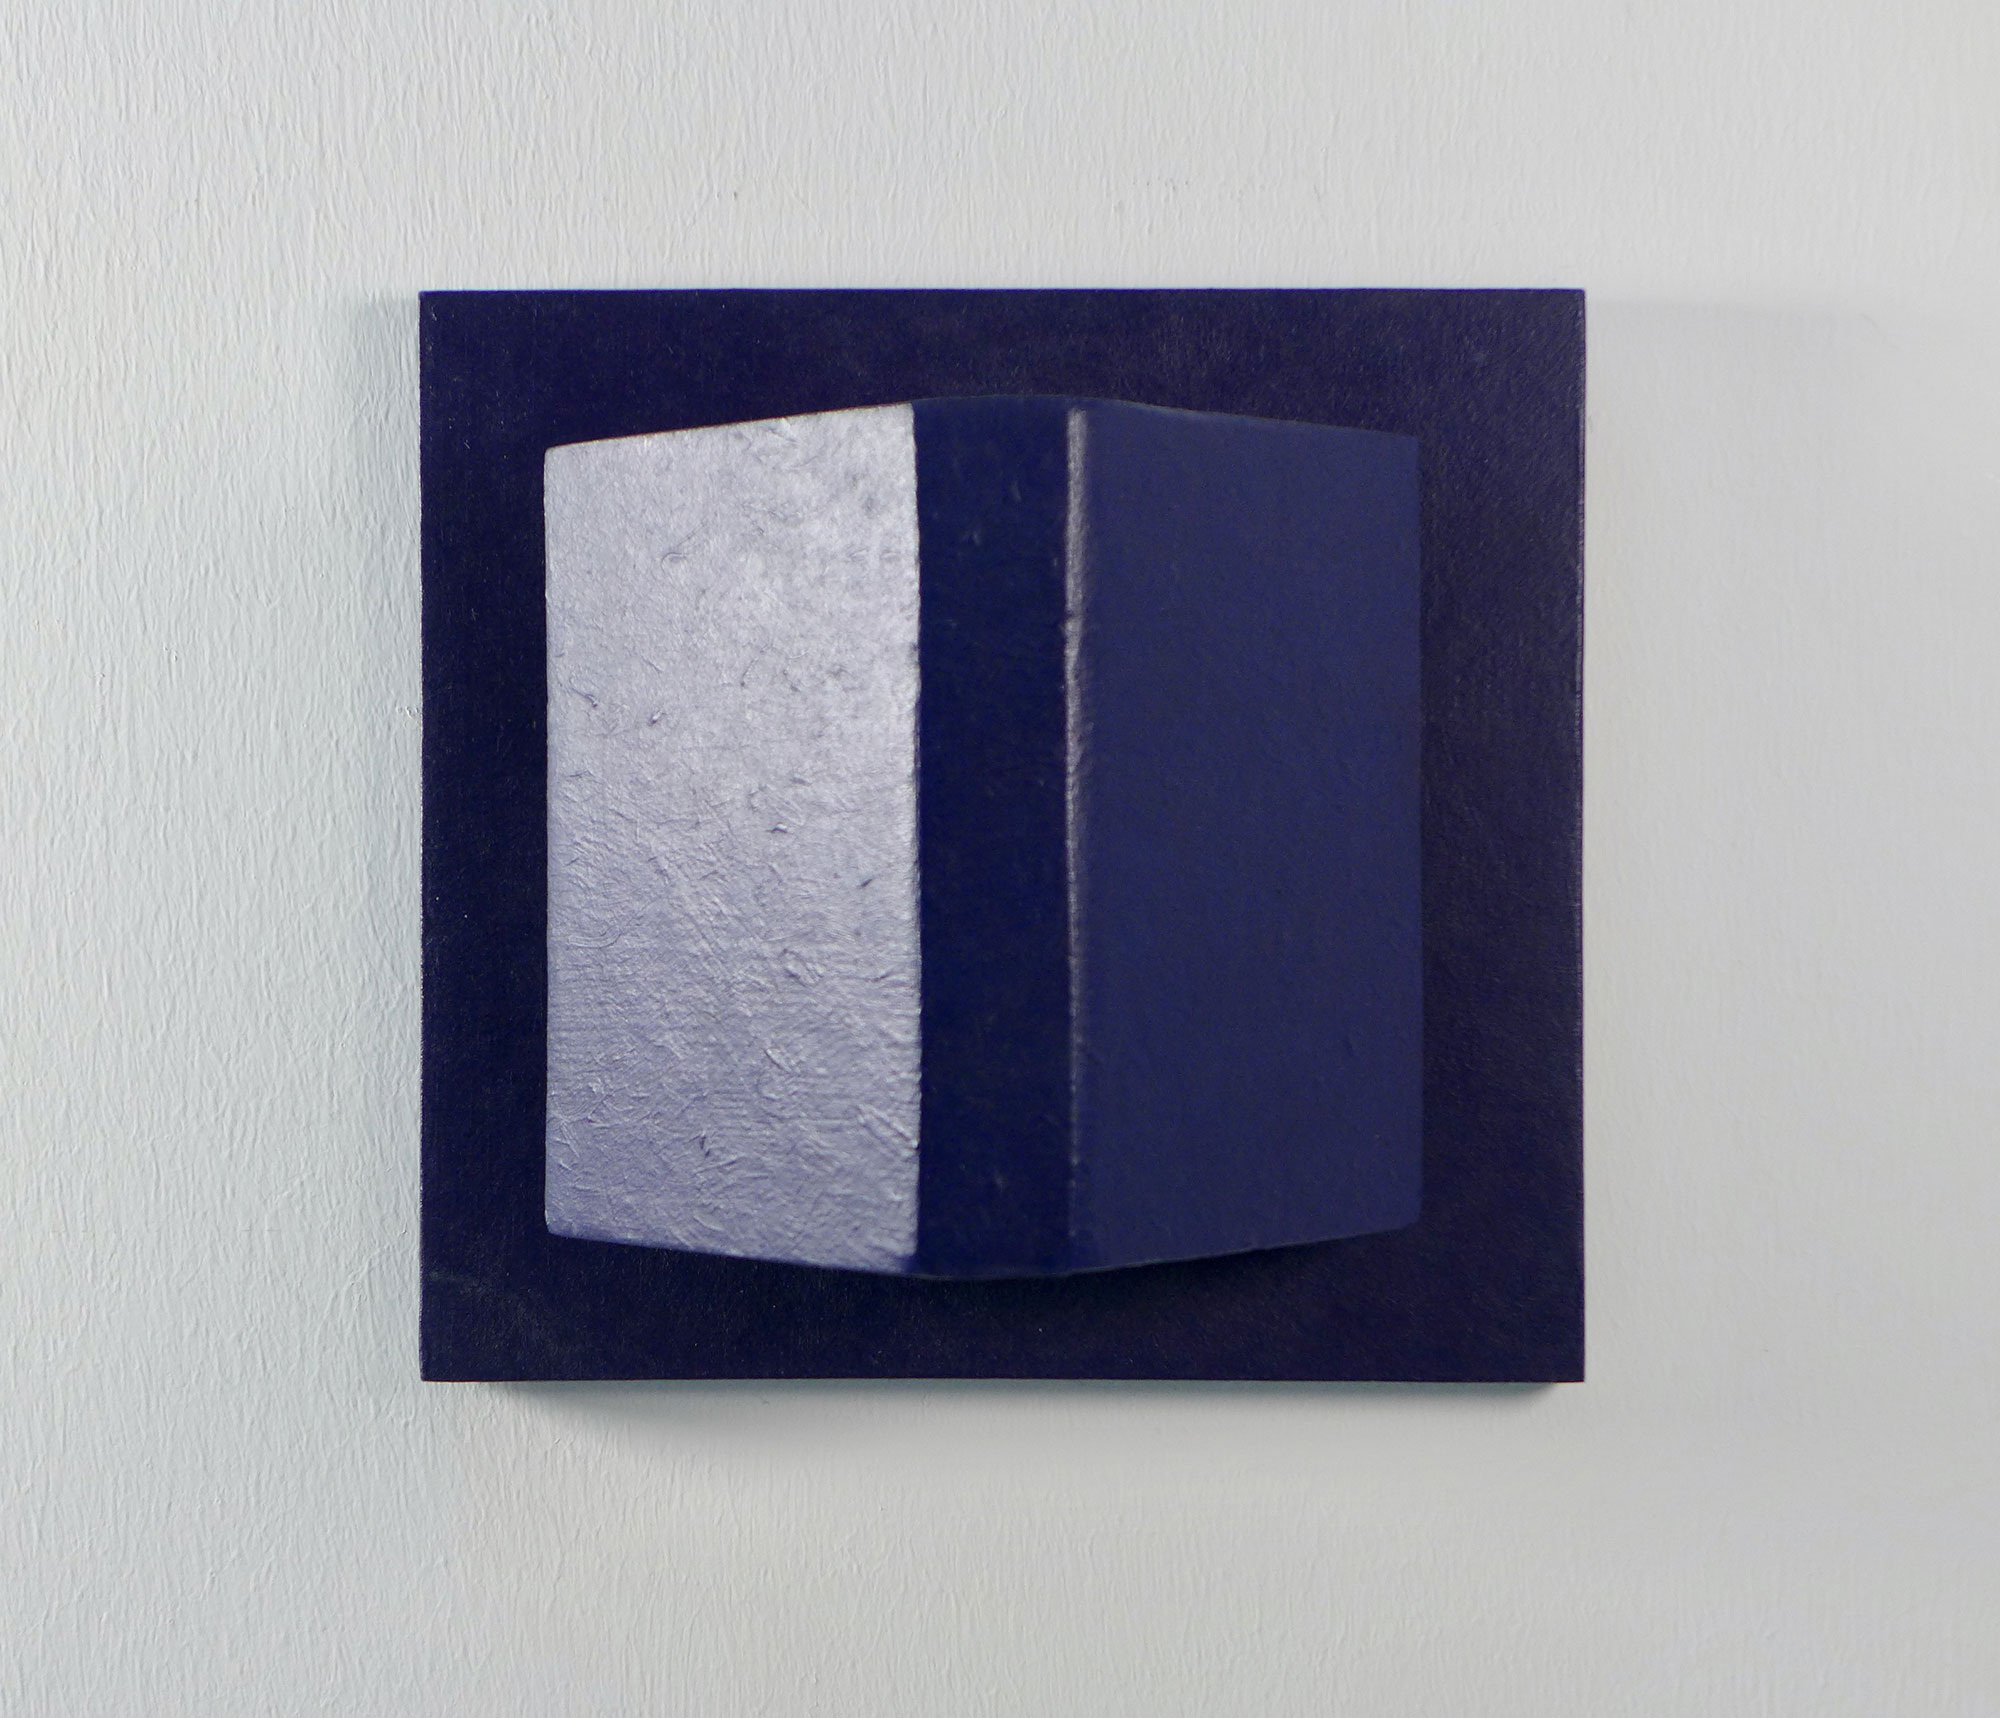 Kenneth Dingwall, Restrain, 1989, acrylic on wood, 20cm x 20cm x 11.5cm